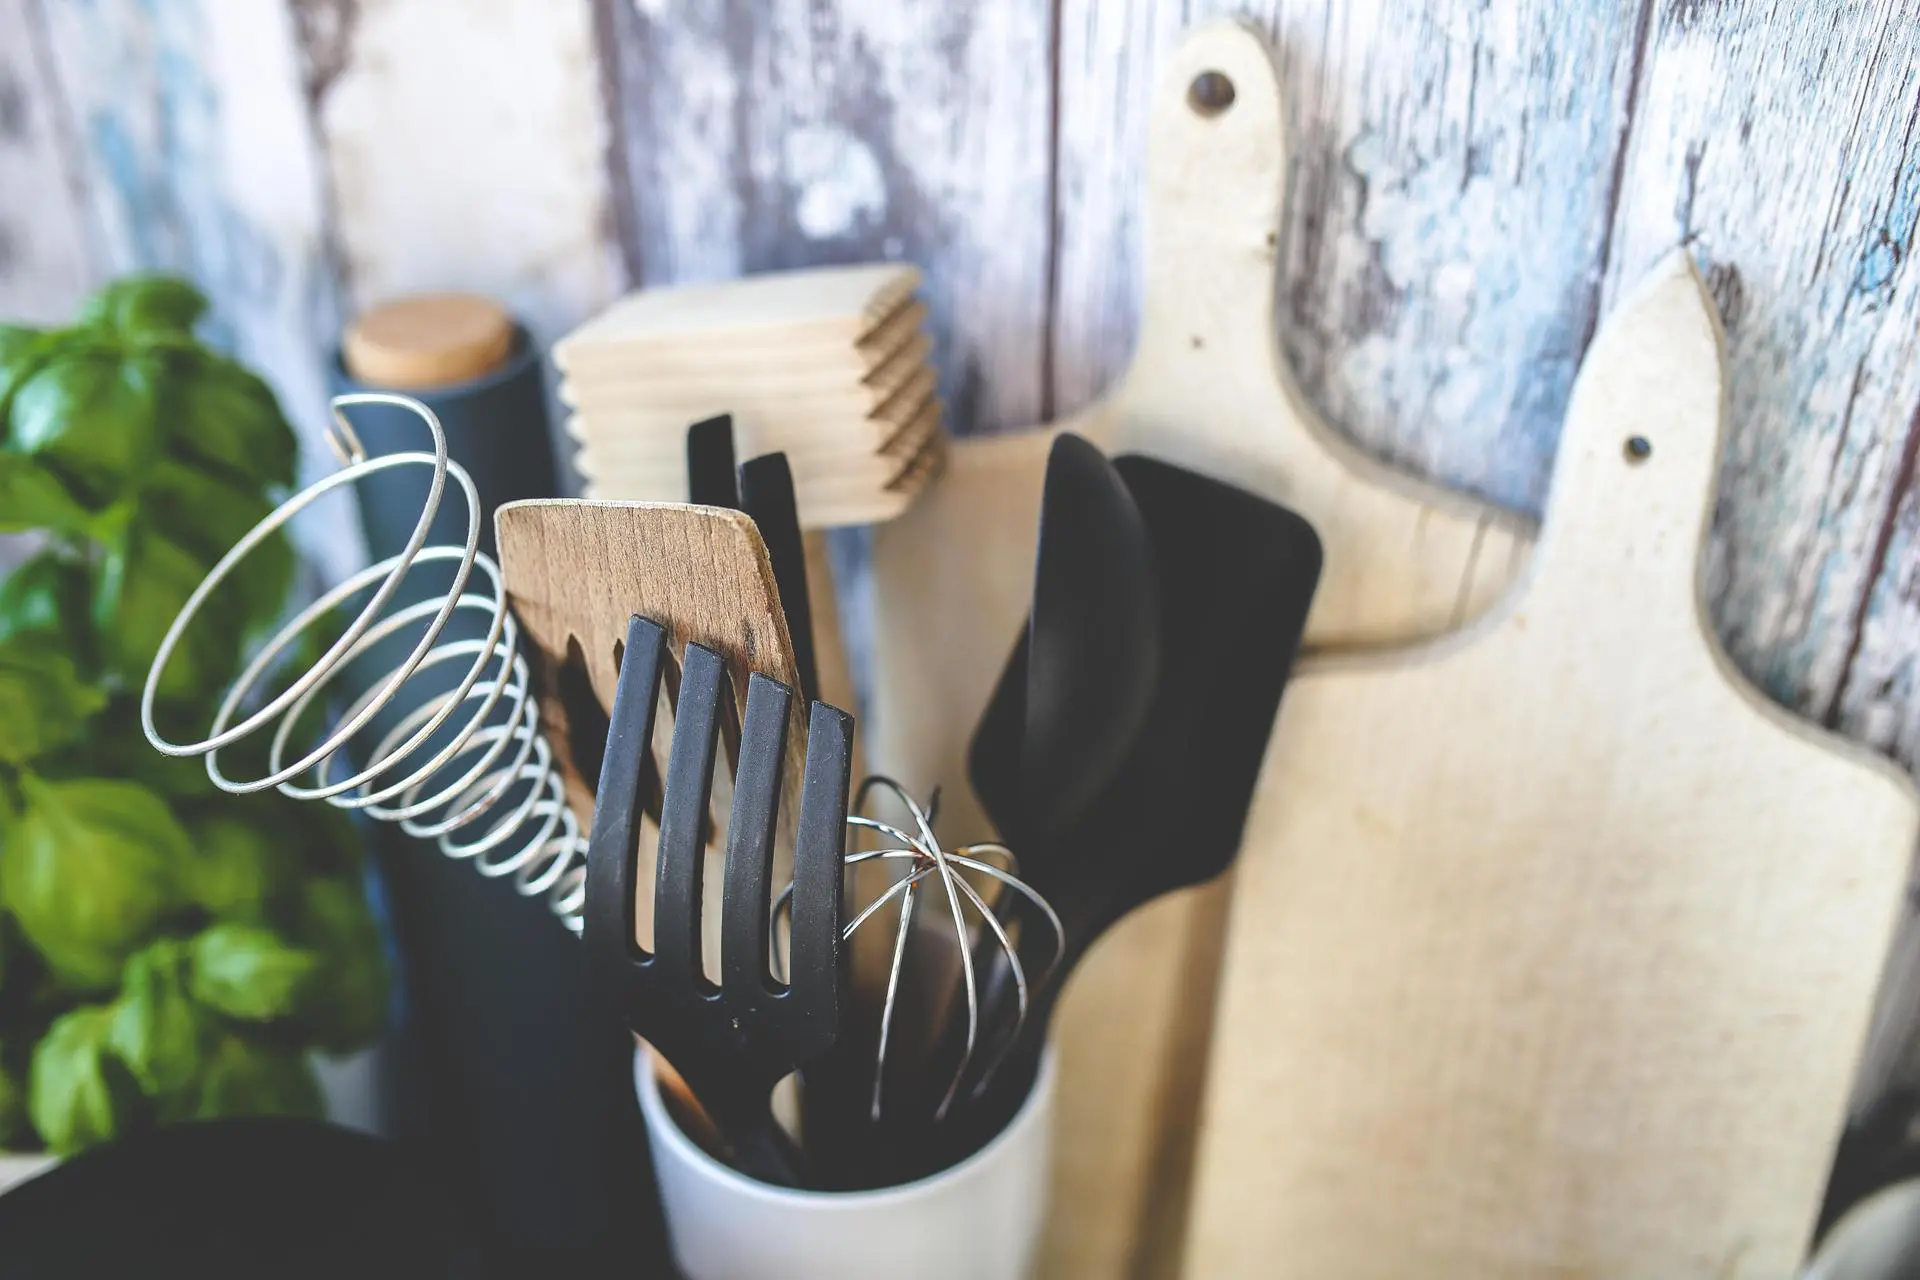 the kitchen utensils market